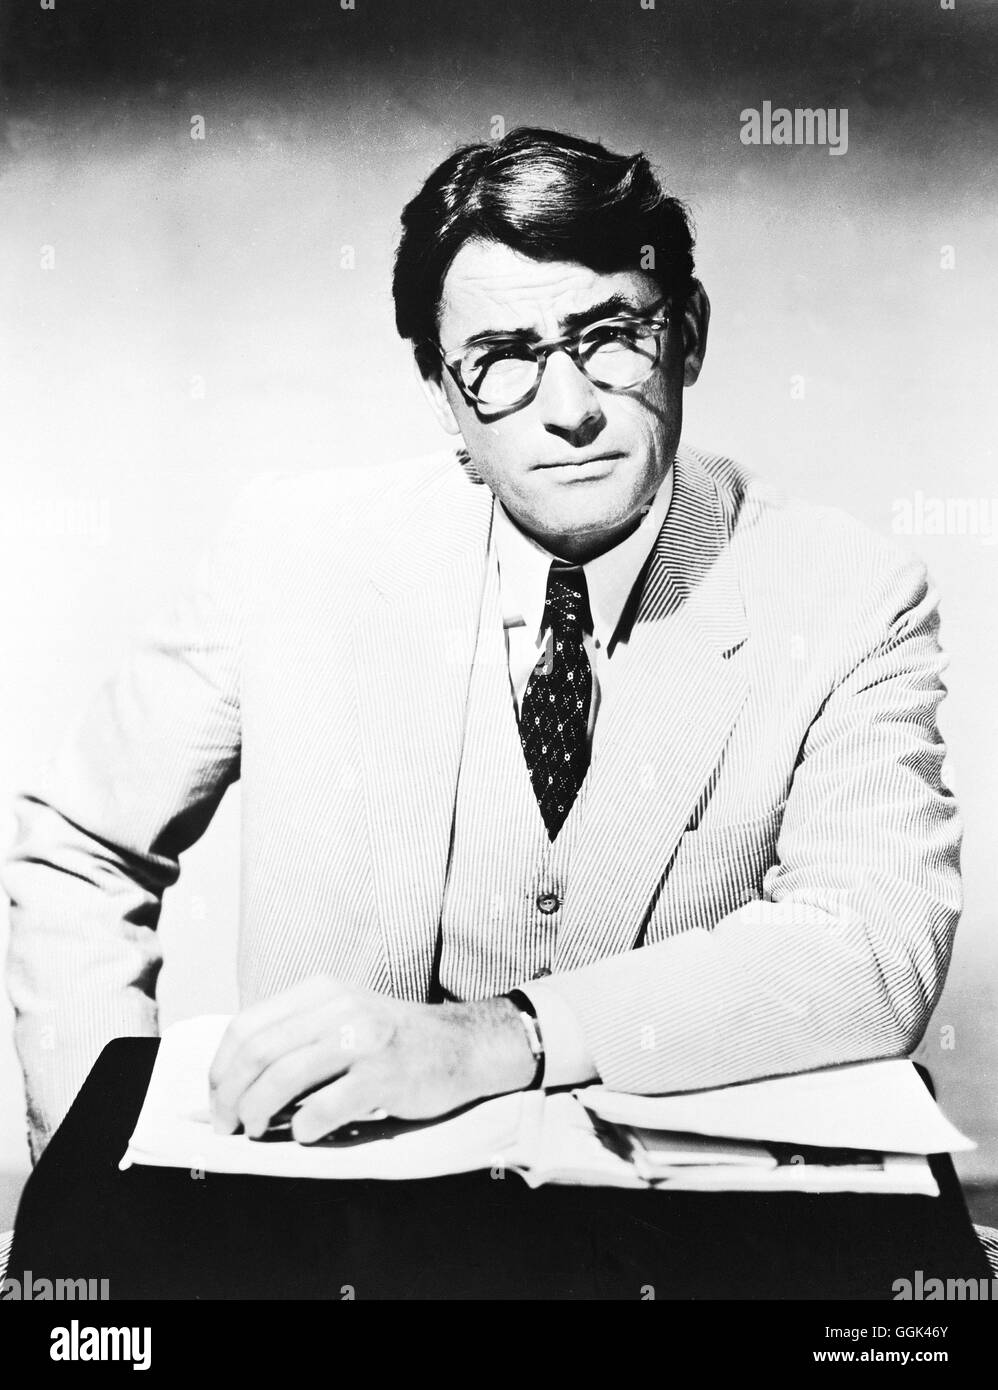 WER DIE NACHTIGALL STÖRT / To Kill a Mockingbird USA 1962 / Robert Mulligan Atticus Finch ( GREGORY PECK) verteidigt vor Gericht einen Schwarzen und wird dabei schmerzlich mit den Rassenvorurteilen der Bevölkerung konfrontiert... Regie: Robert Mulligan aka. To Kill a Mockingbird Stock Photo